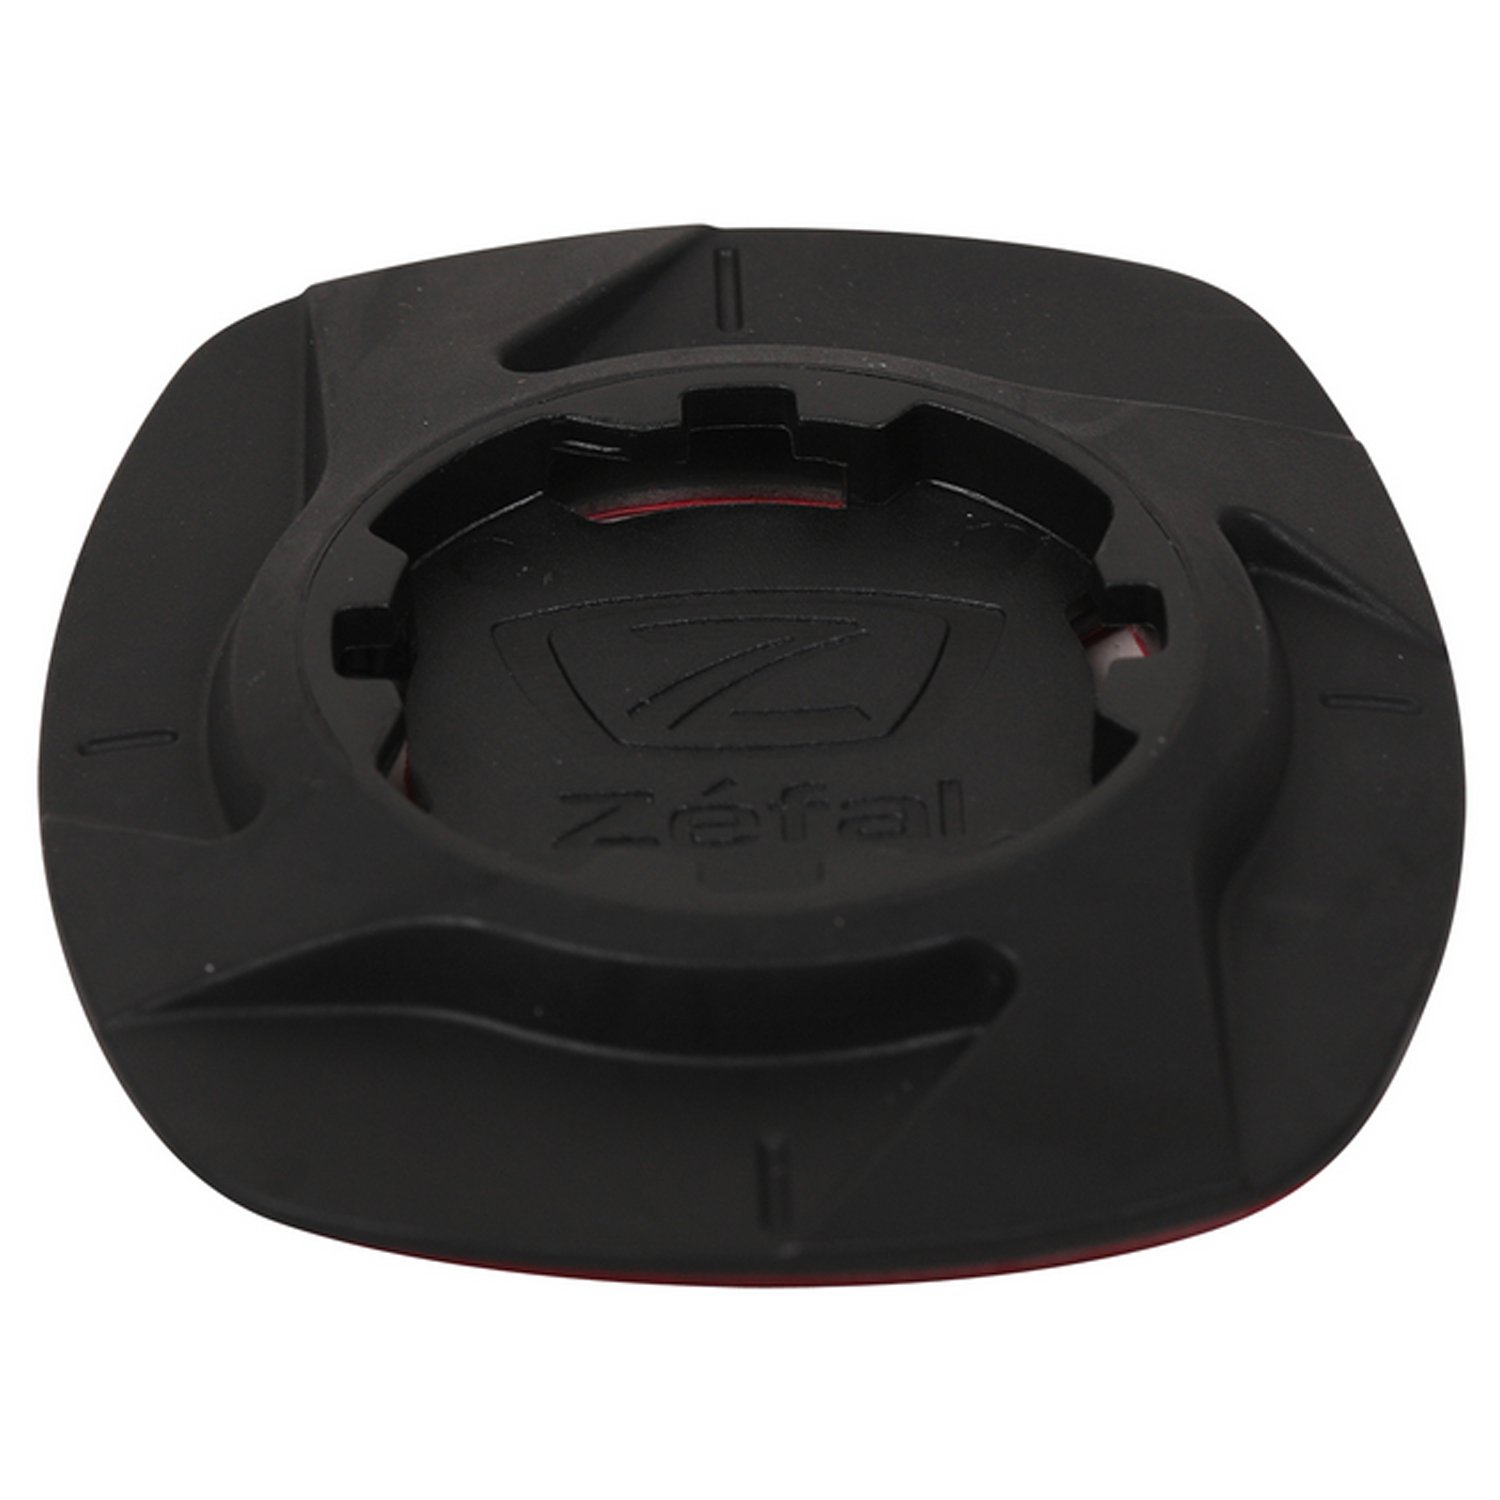 Крепление для телефона Zefal Universal Phone Adapter - Bike Kit, черный, 2023, 7278 крепеж на руль oxford dryphone universal для телефона 2023 ox190